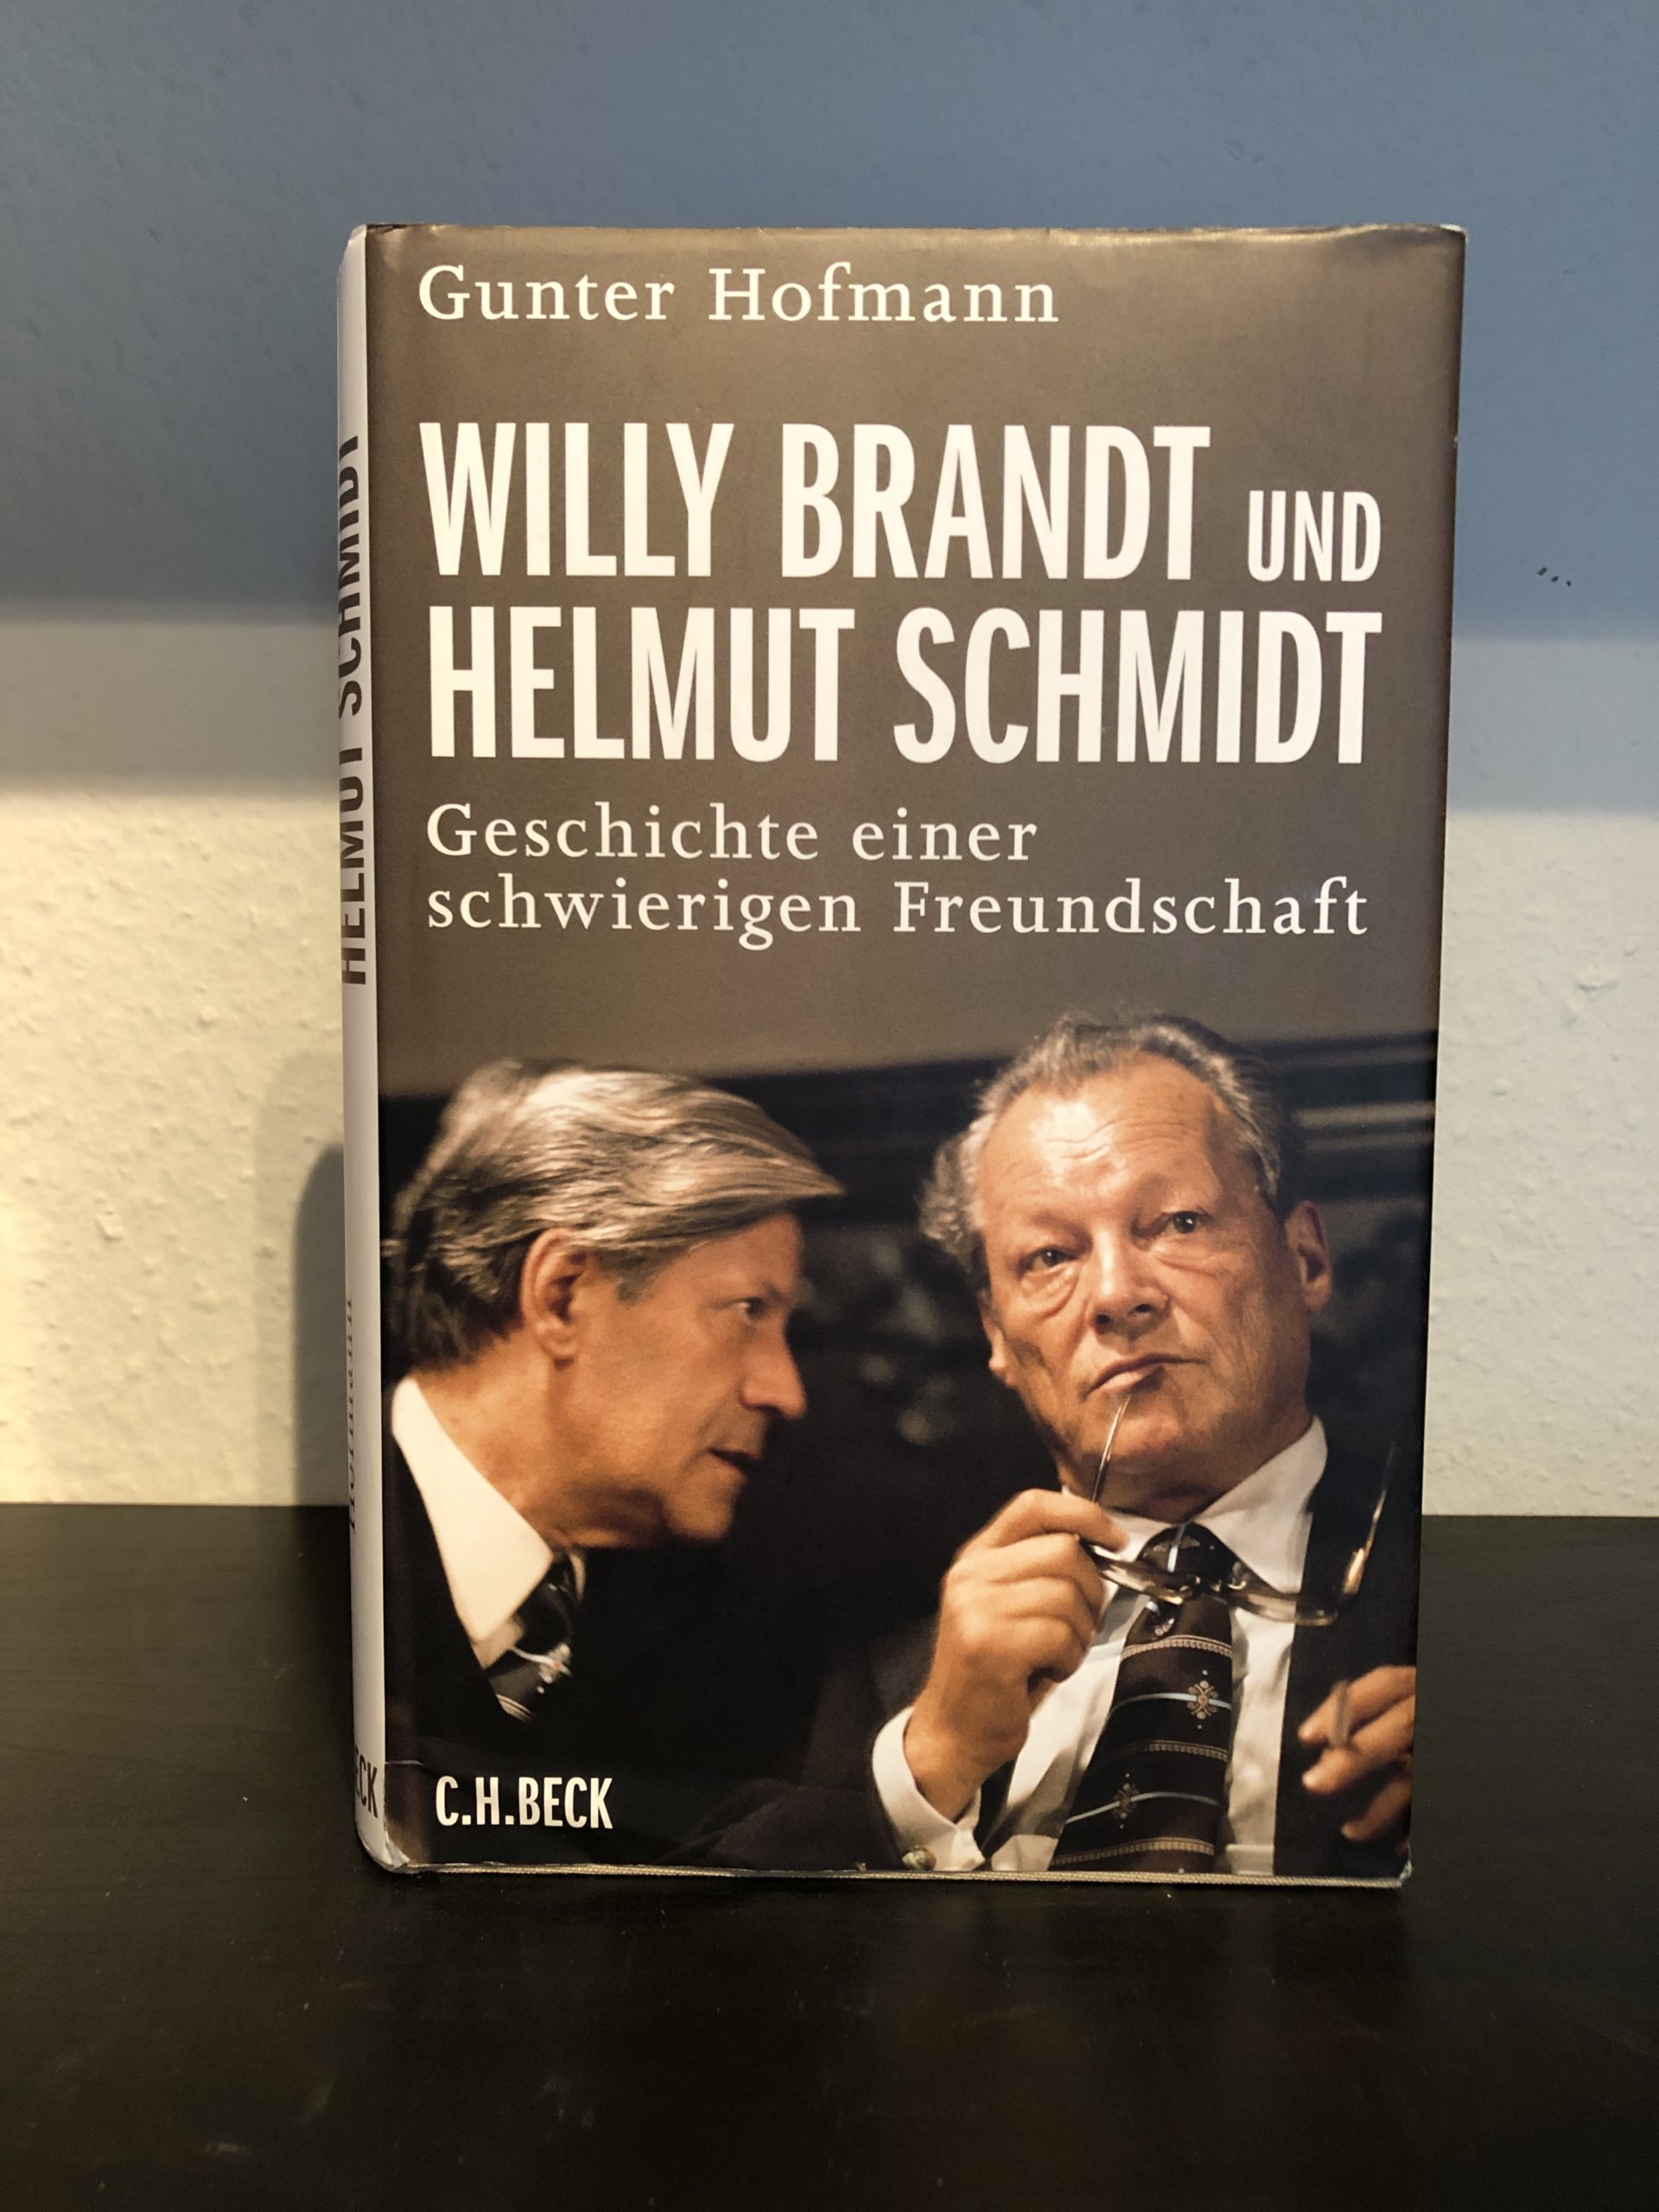 Willy Brandt und Helmut Schmidt - Geschichte einer schwierigen Freundschaft - Gunter Hofmann-image